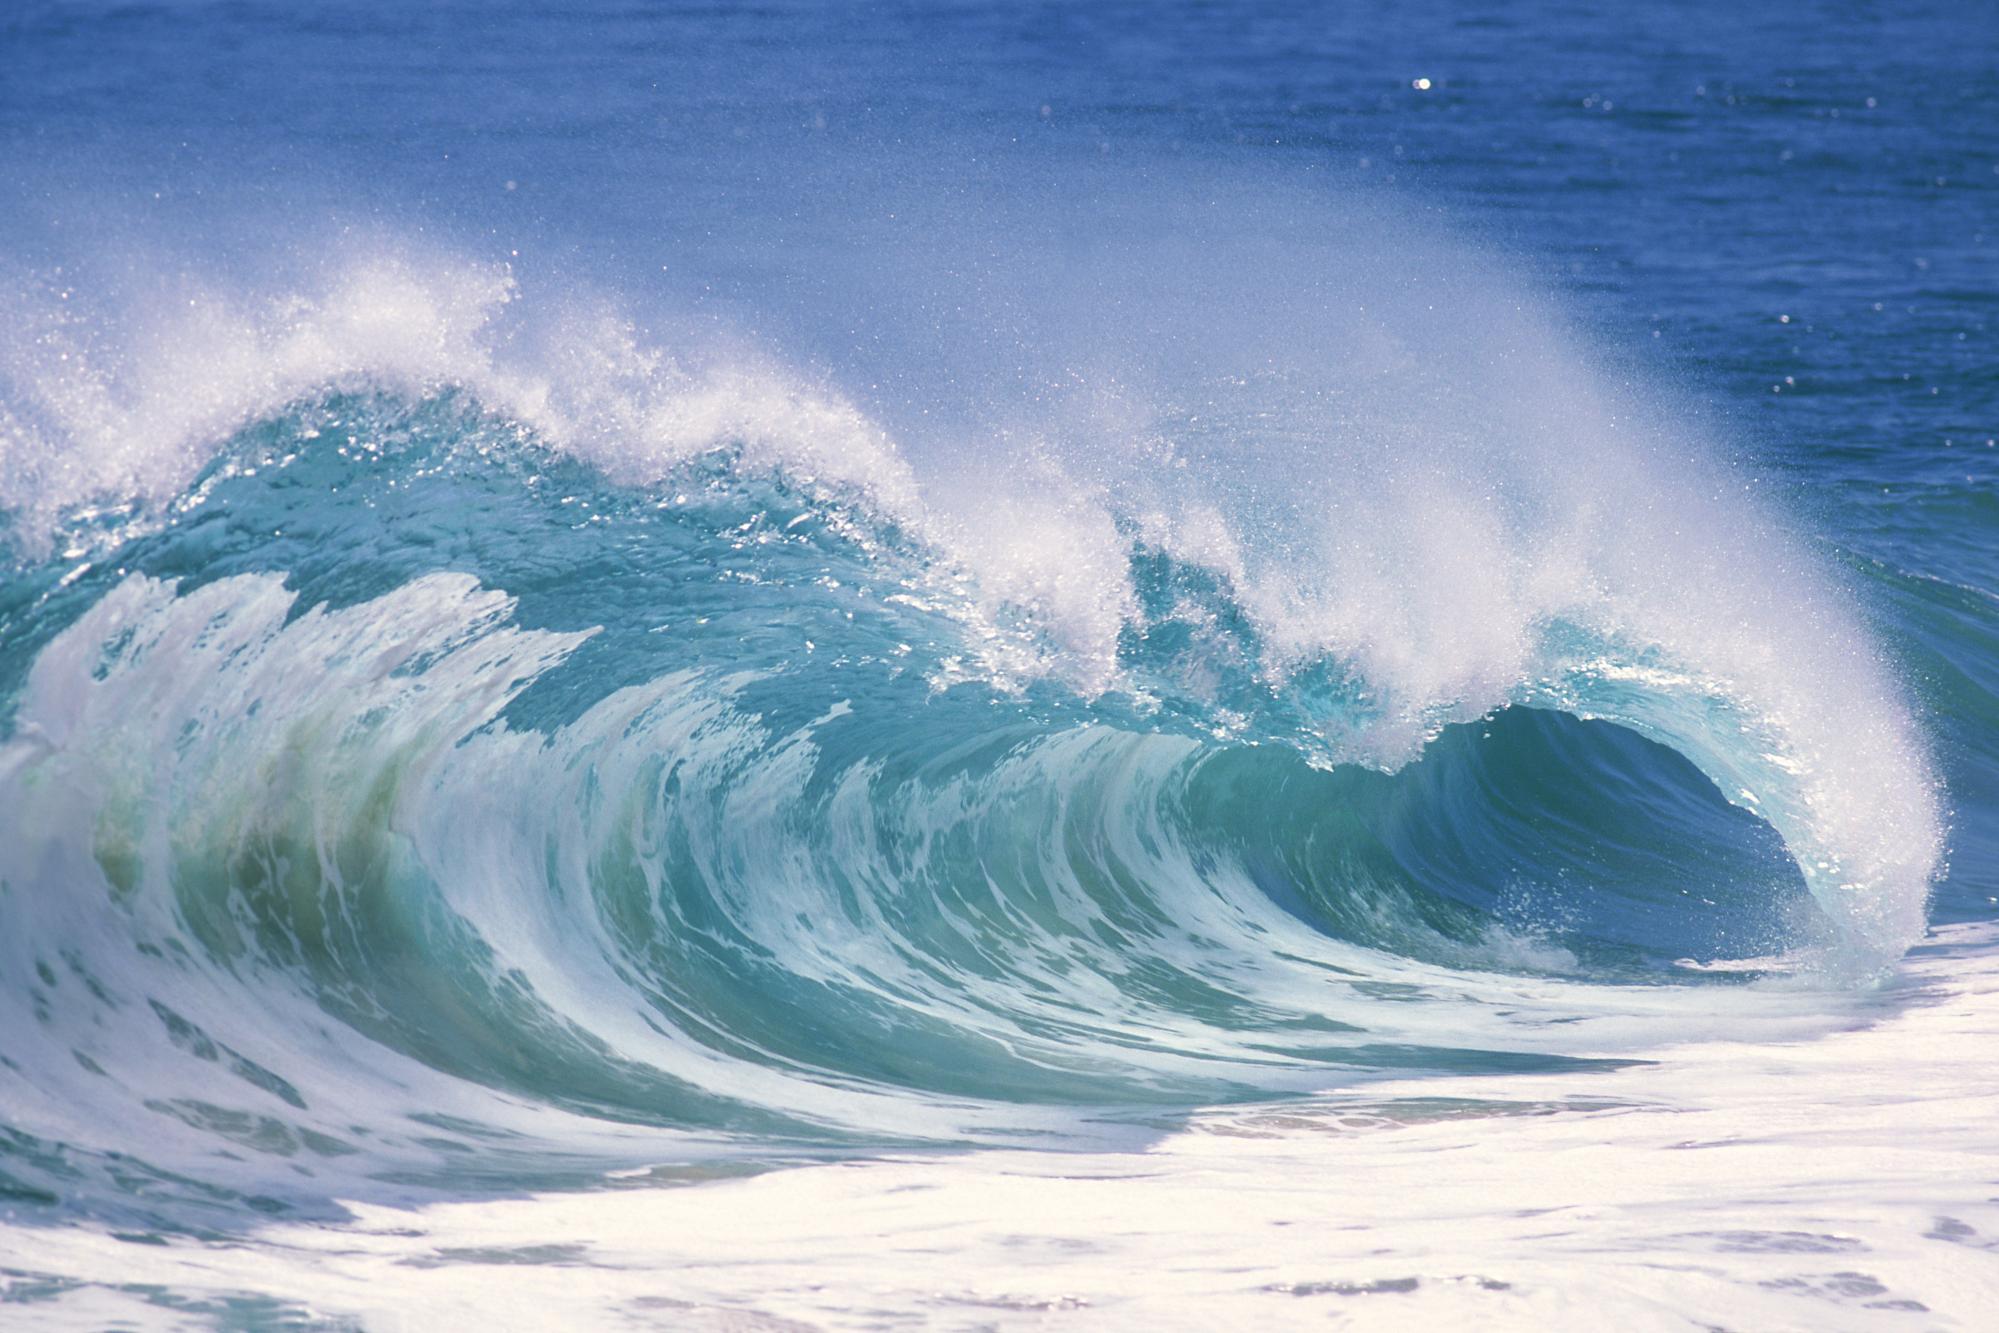 Ocean Waves Wallpaper Desktop Images Pictures   Becuo